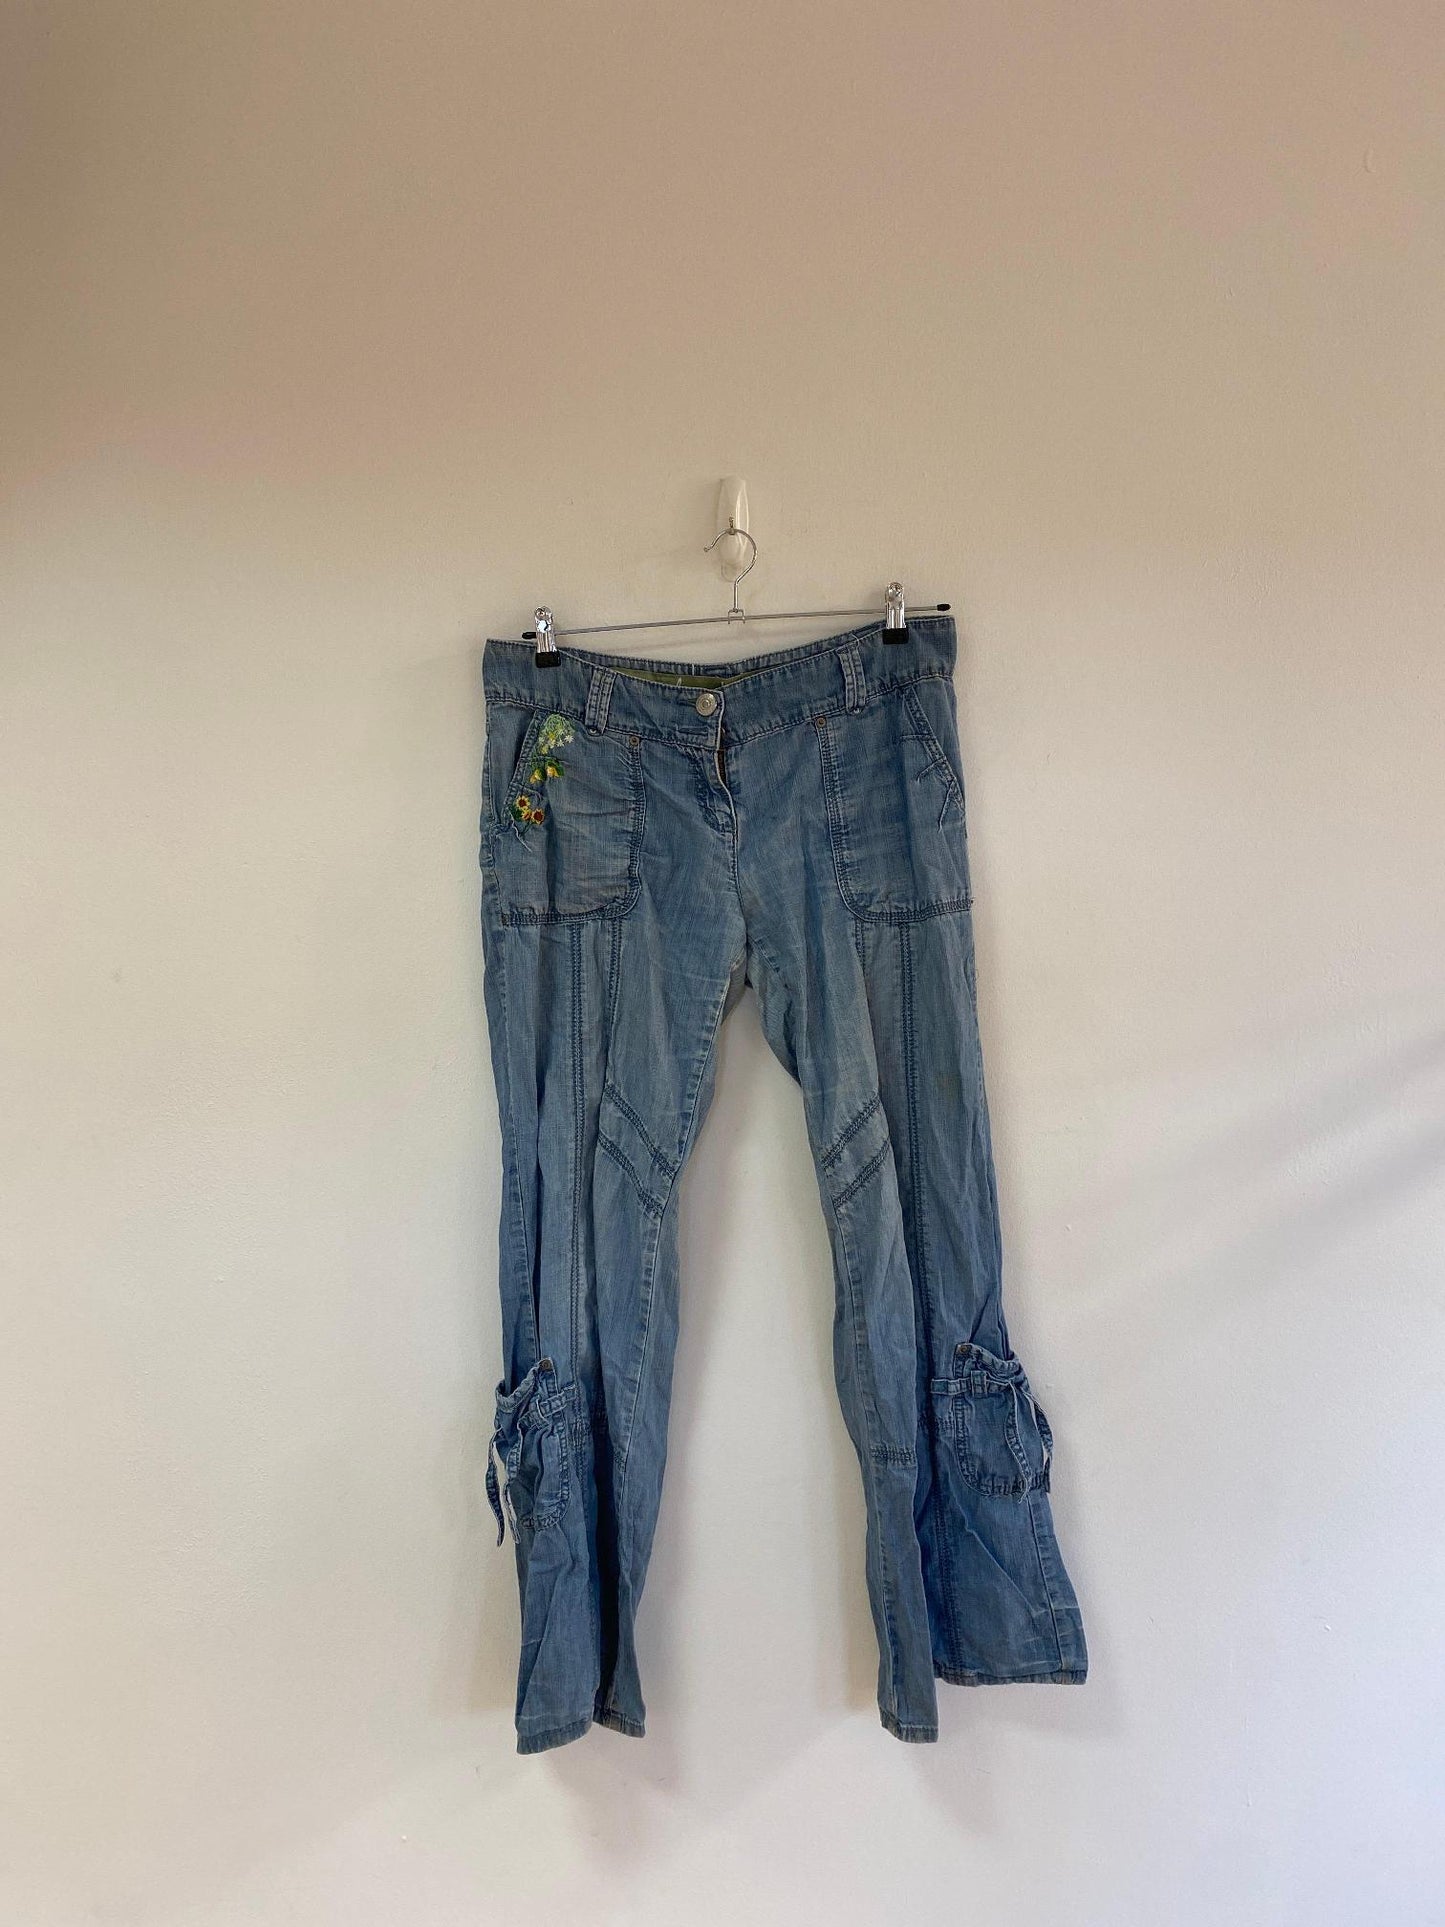 Low rise 90s jeans, Next, size 14 - Damaged Item Sale